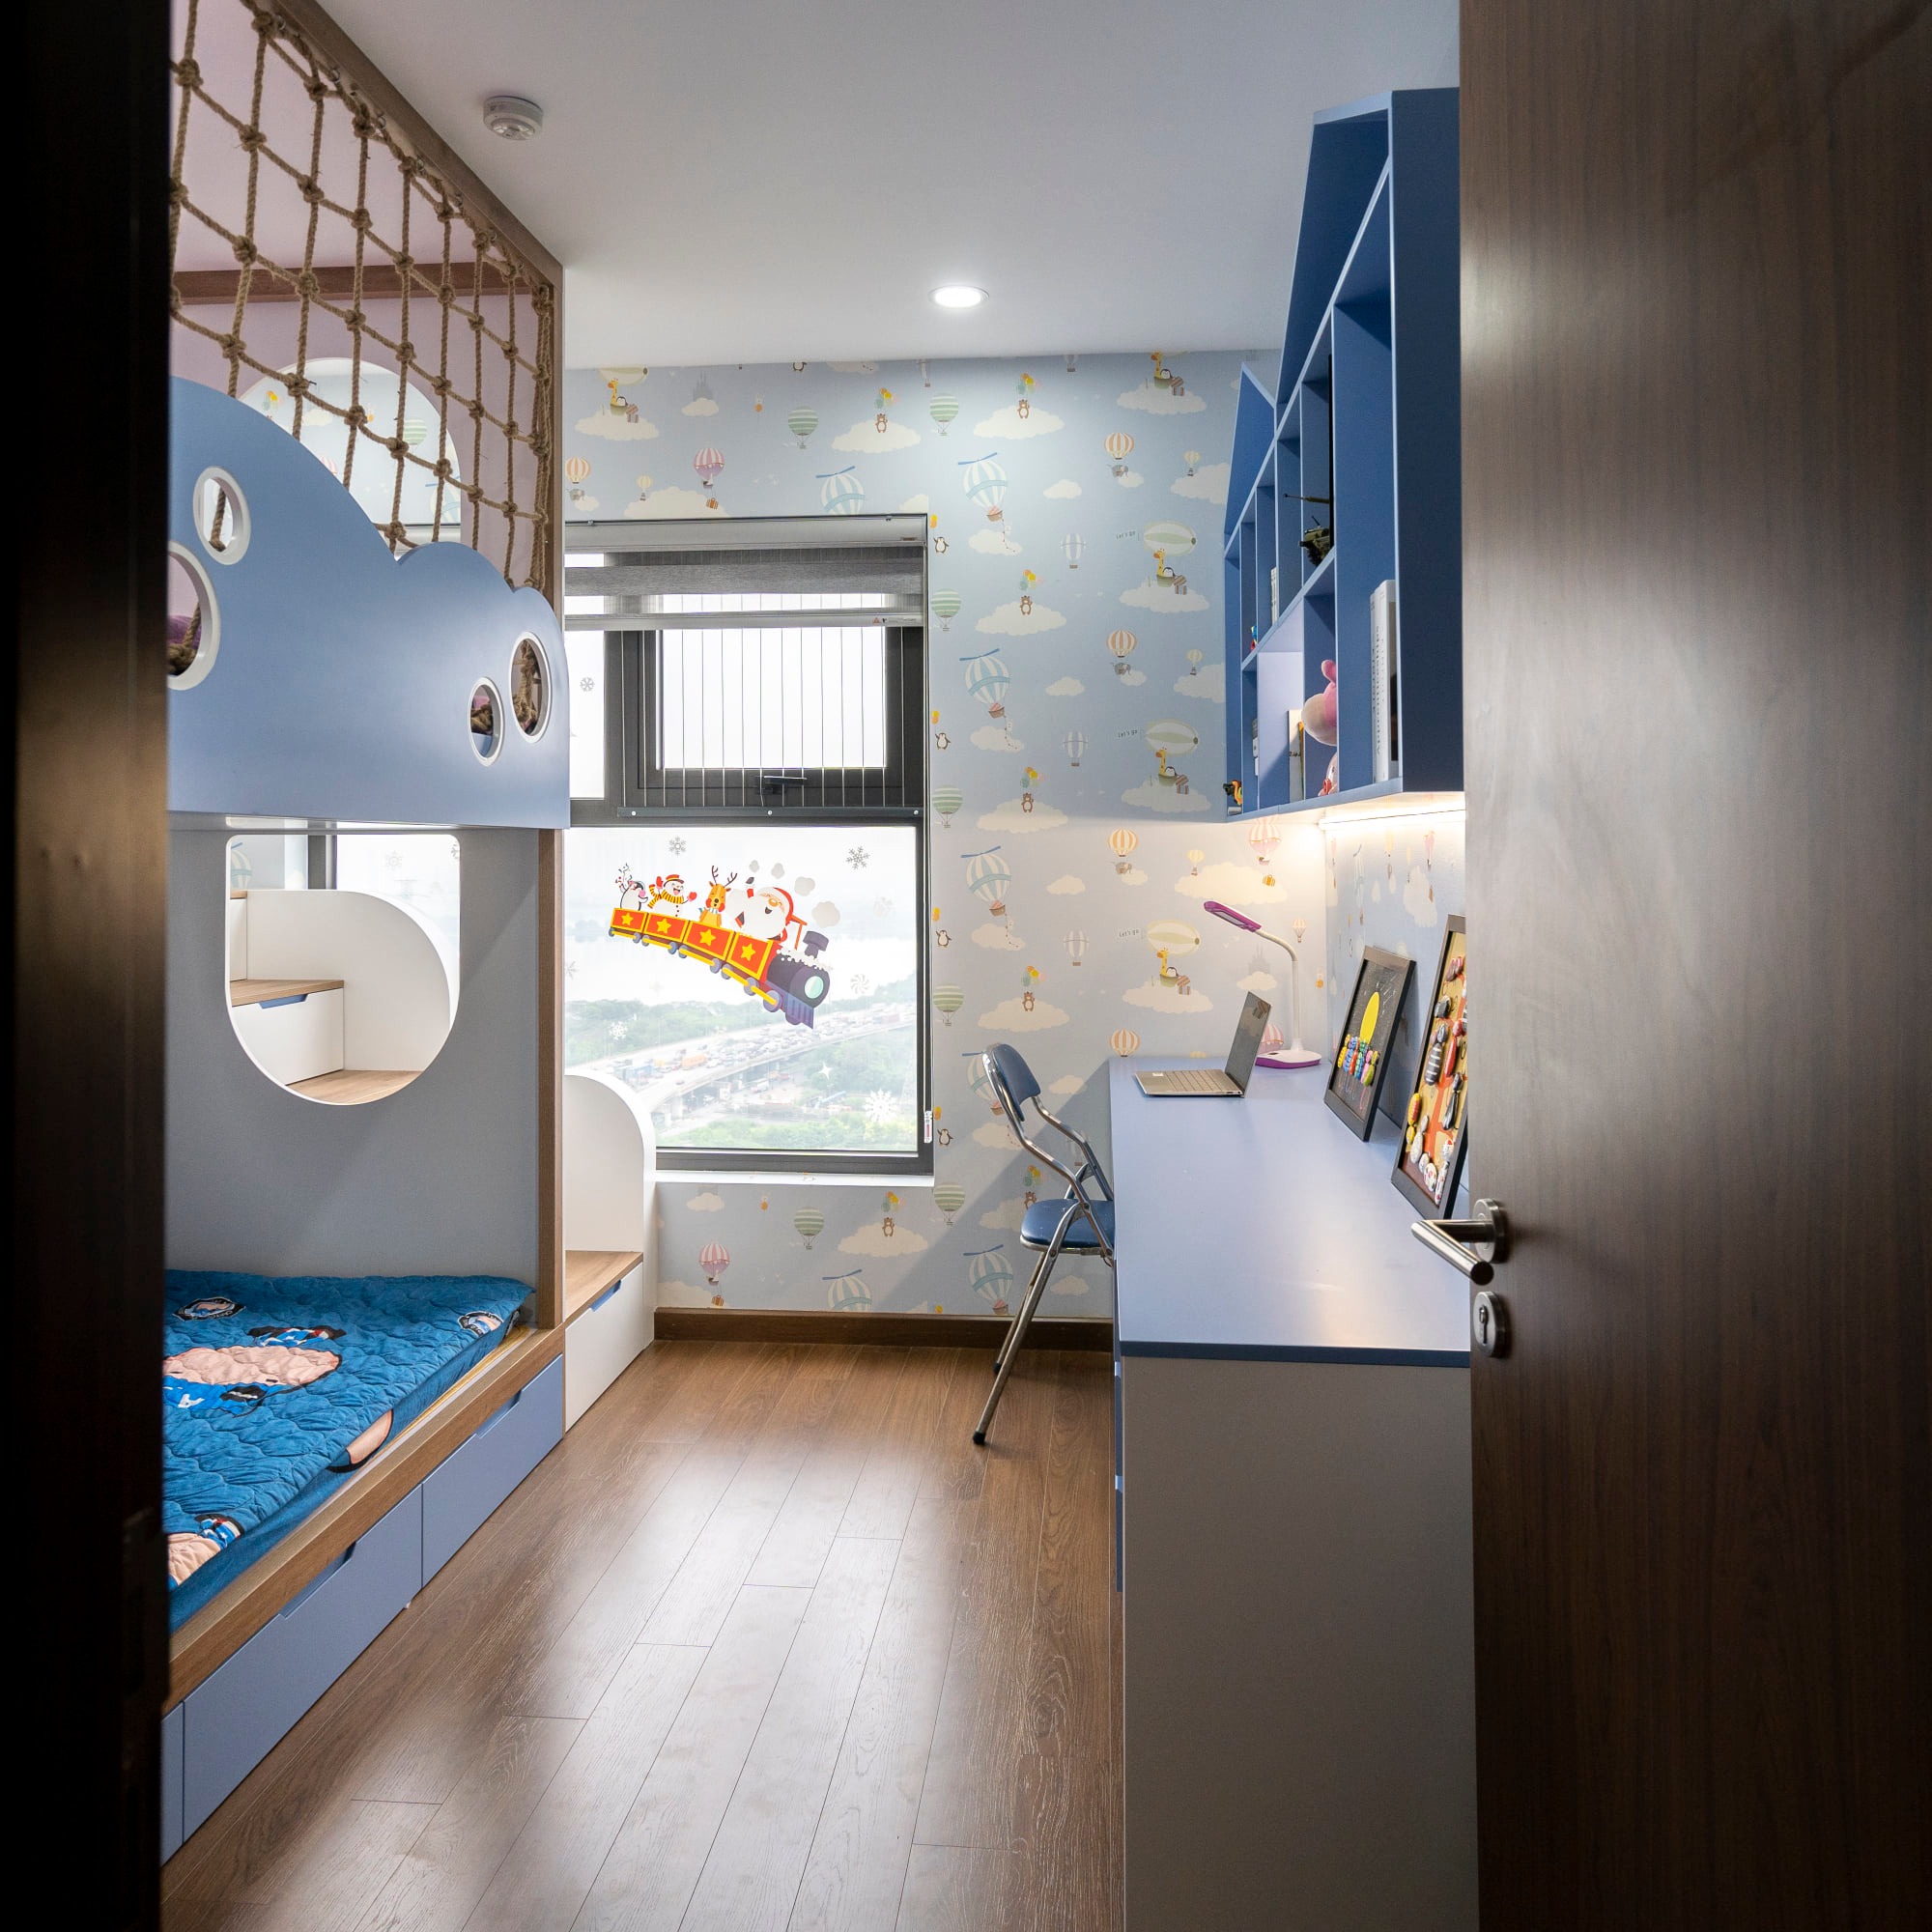 Mẫu nhà đẹp năm 2022: Mê mẩn căn hộ 99m2 theo phong cách color block của cặp vợ chồng trẻ Hà Thành - Ảnh 6.